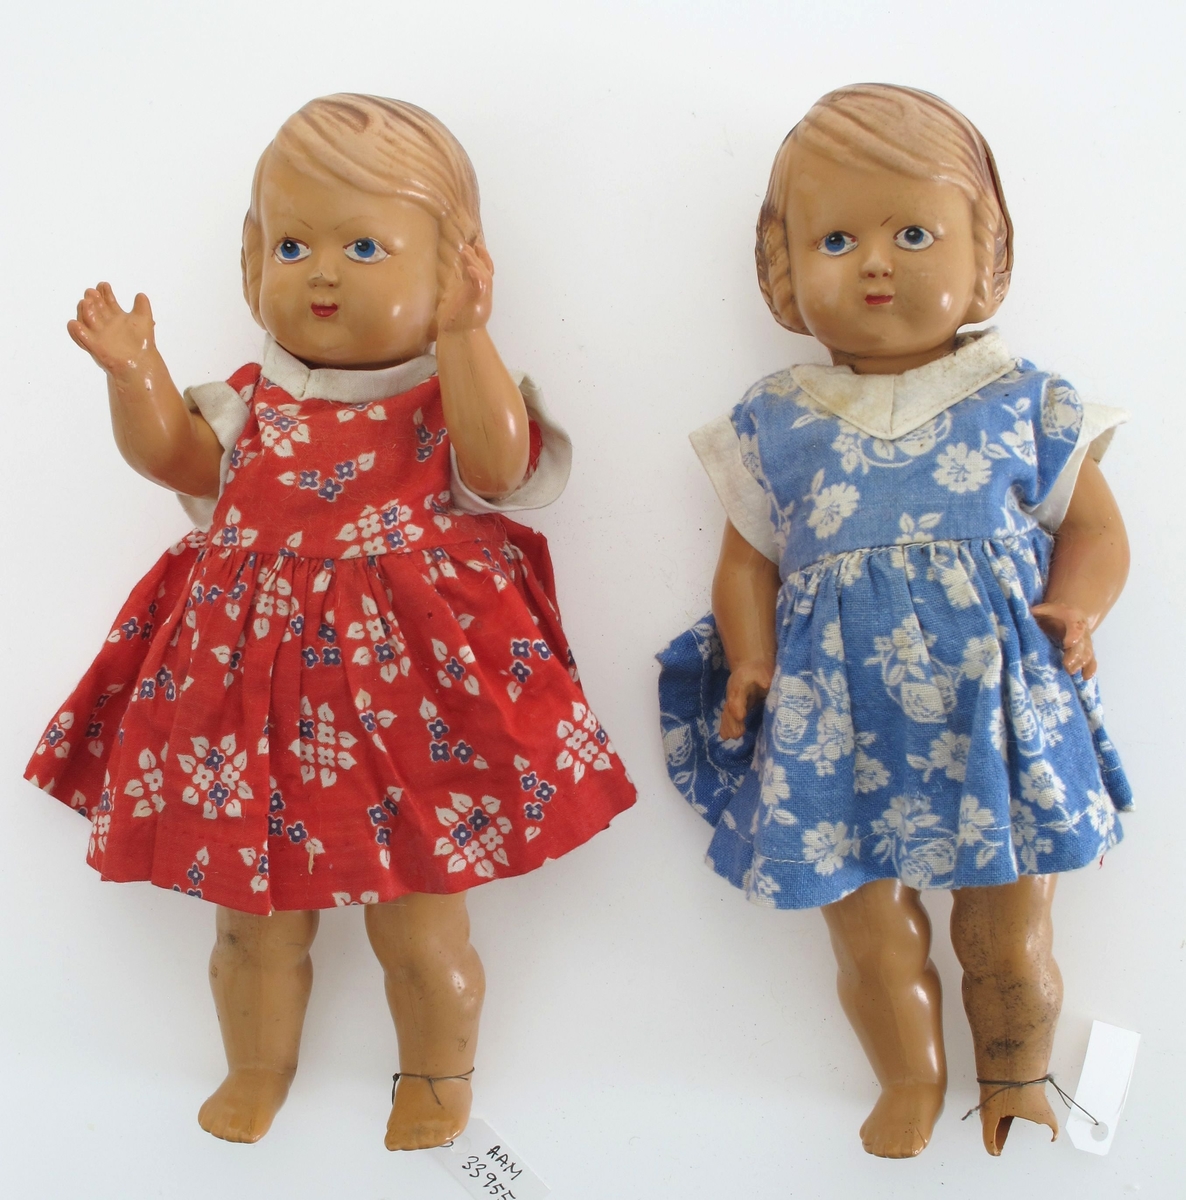 Dukke av støpte plastdeler. Hode og kropp i ett, mens armer og ben er støpt for seg og montert med strikk.   Hjemmesydde klær (?): Rød blomstret kjole. Underkjole. Underbukse i blå blomstet stoff.